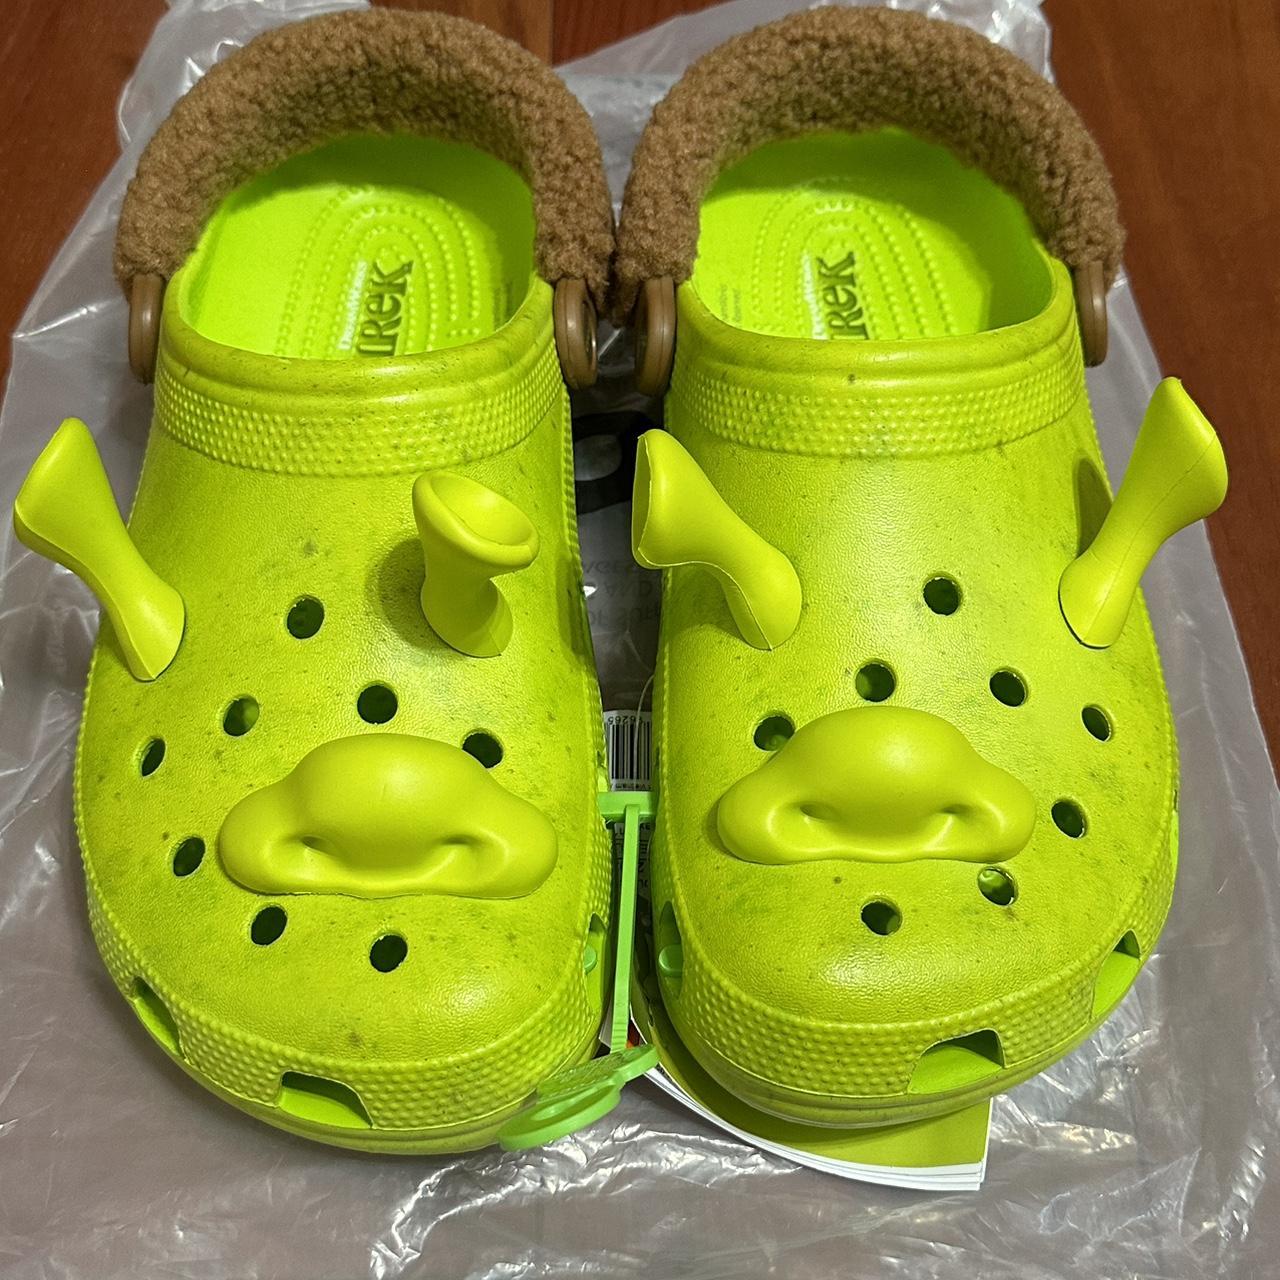 Exclusive Shrocs x Shrek × Crocs Classic Clog Men’s... - Depop